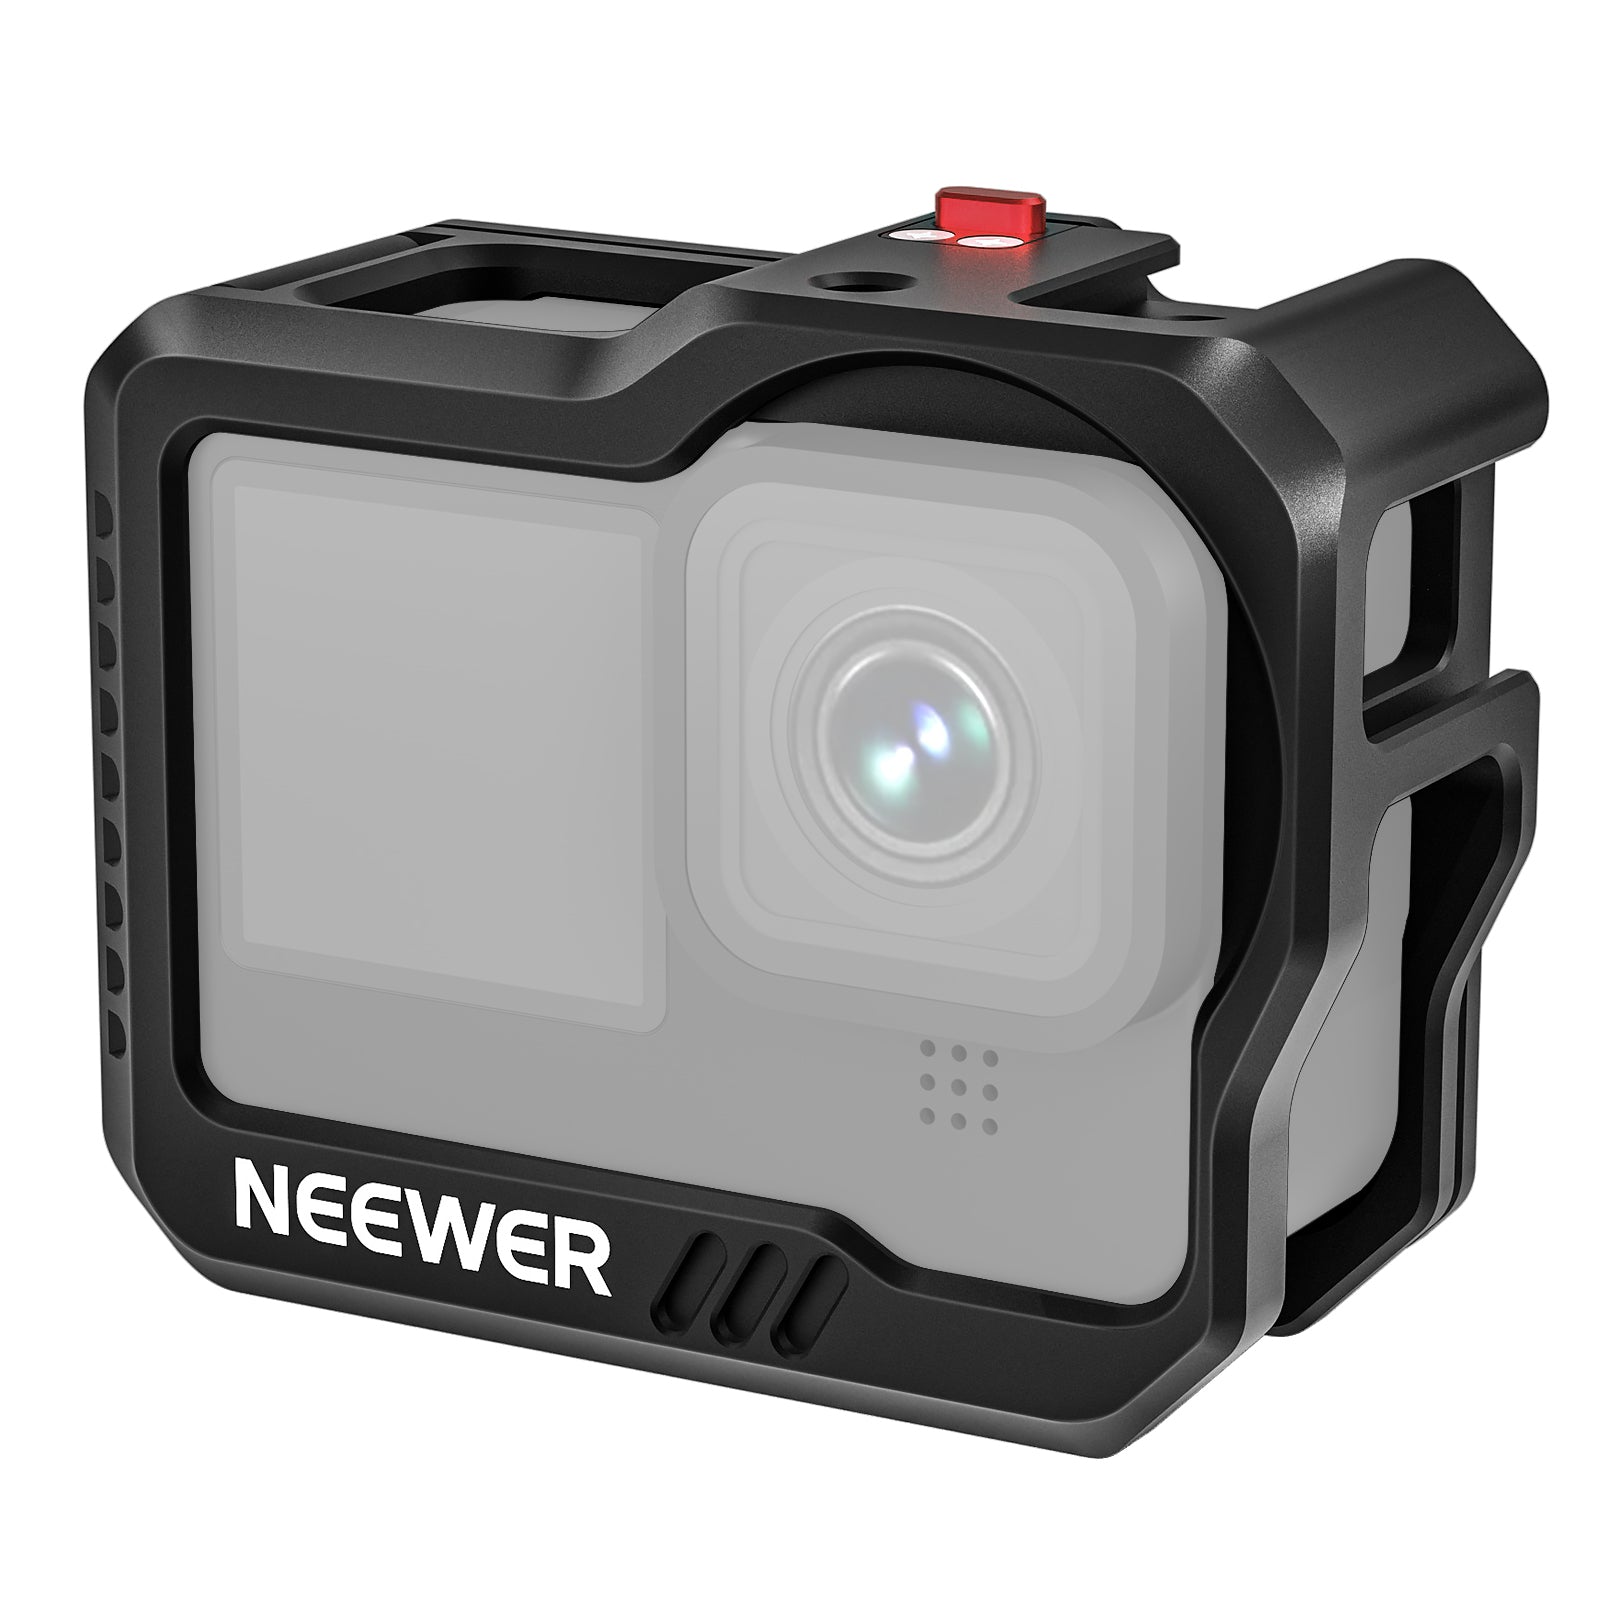  Buy a GoPro HERO9 Black